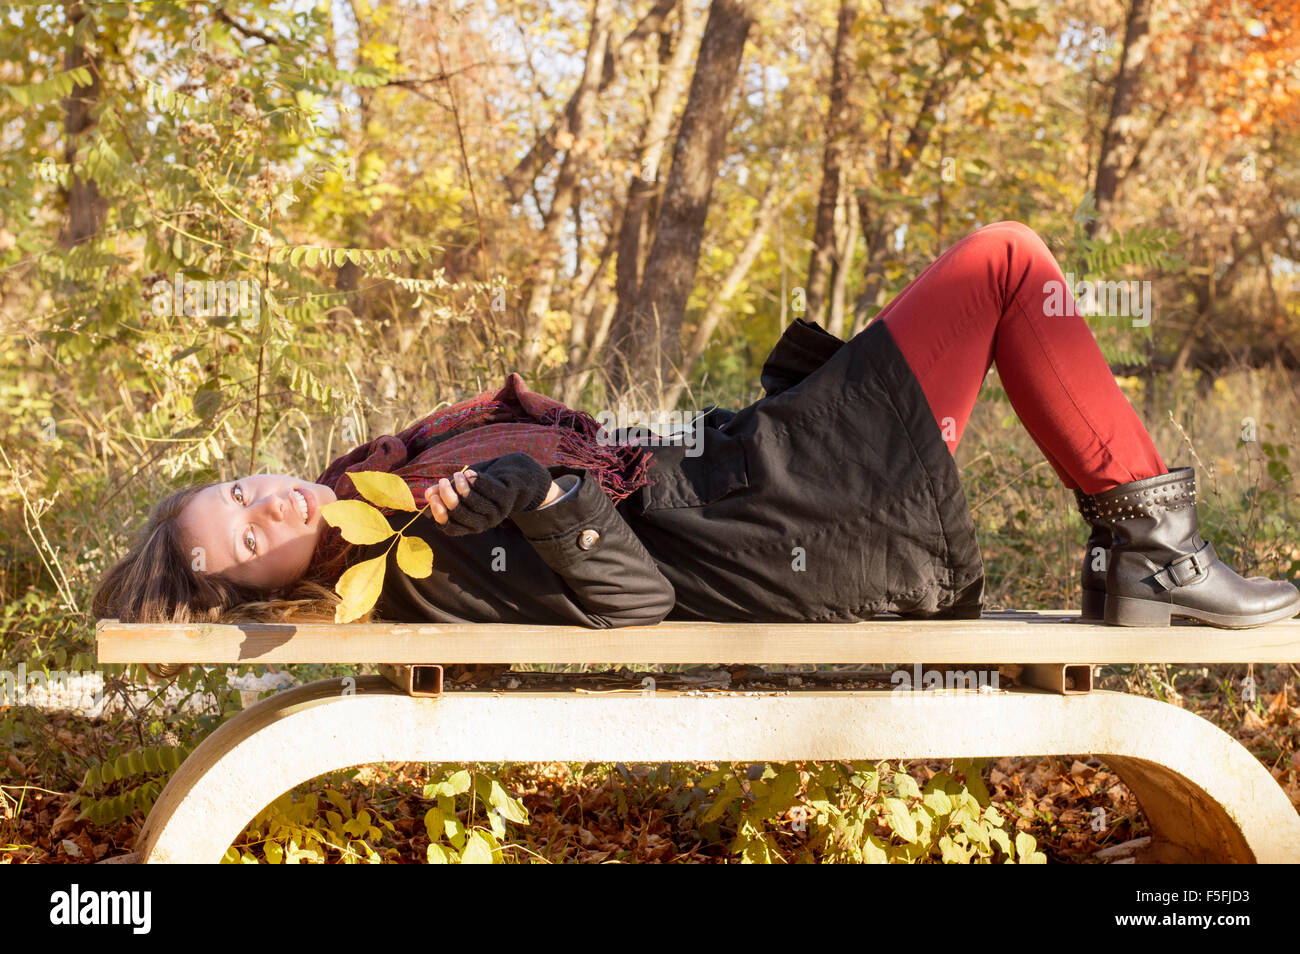 Schönes Mädchen auf der Bank liegen und halten im Herbst Blatt in einem Park in herbstlichen Farben gefärbt Stockfoto